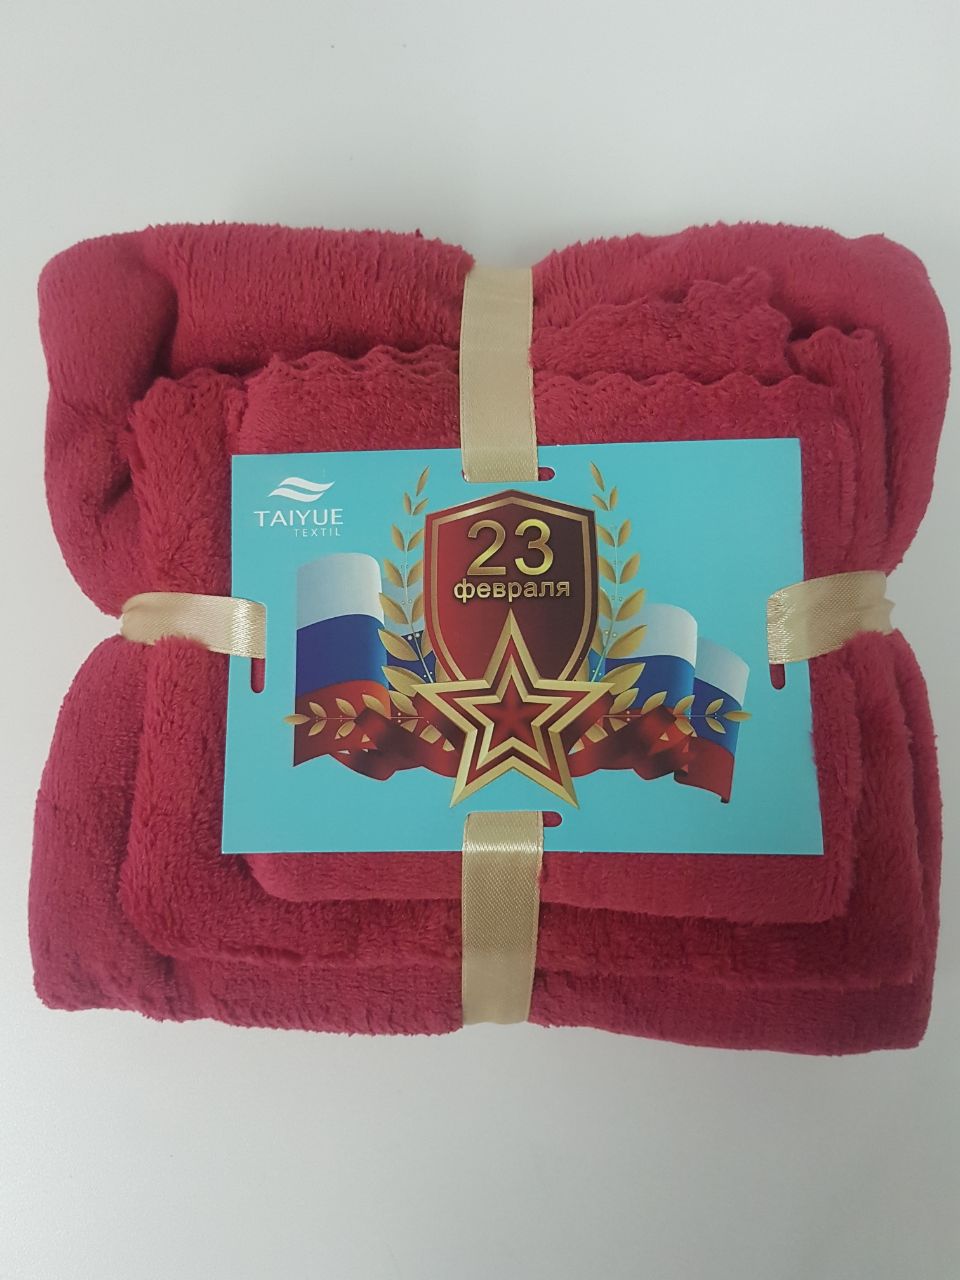 Набор полотенец 3 в 1 TAIYUE textil 23 февраля красный 25x50, 30x70, 70x140